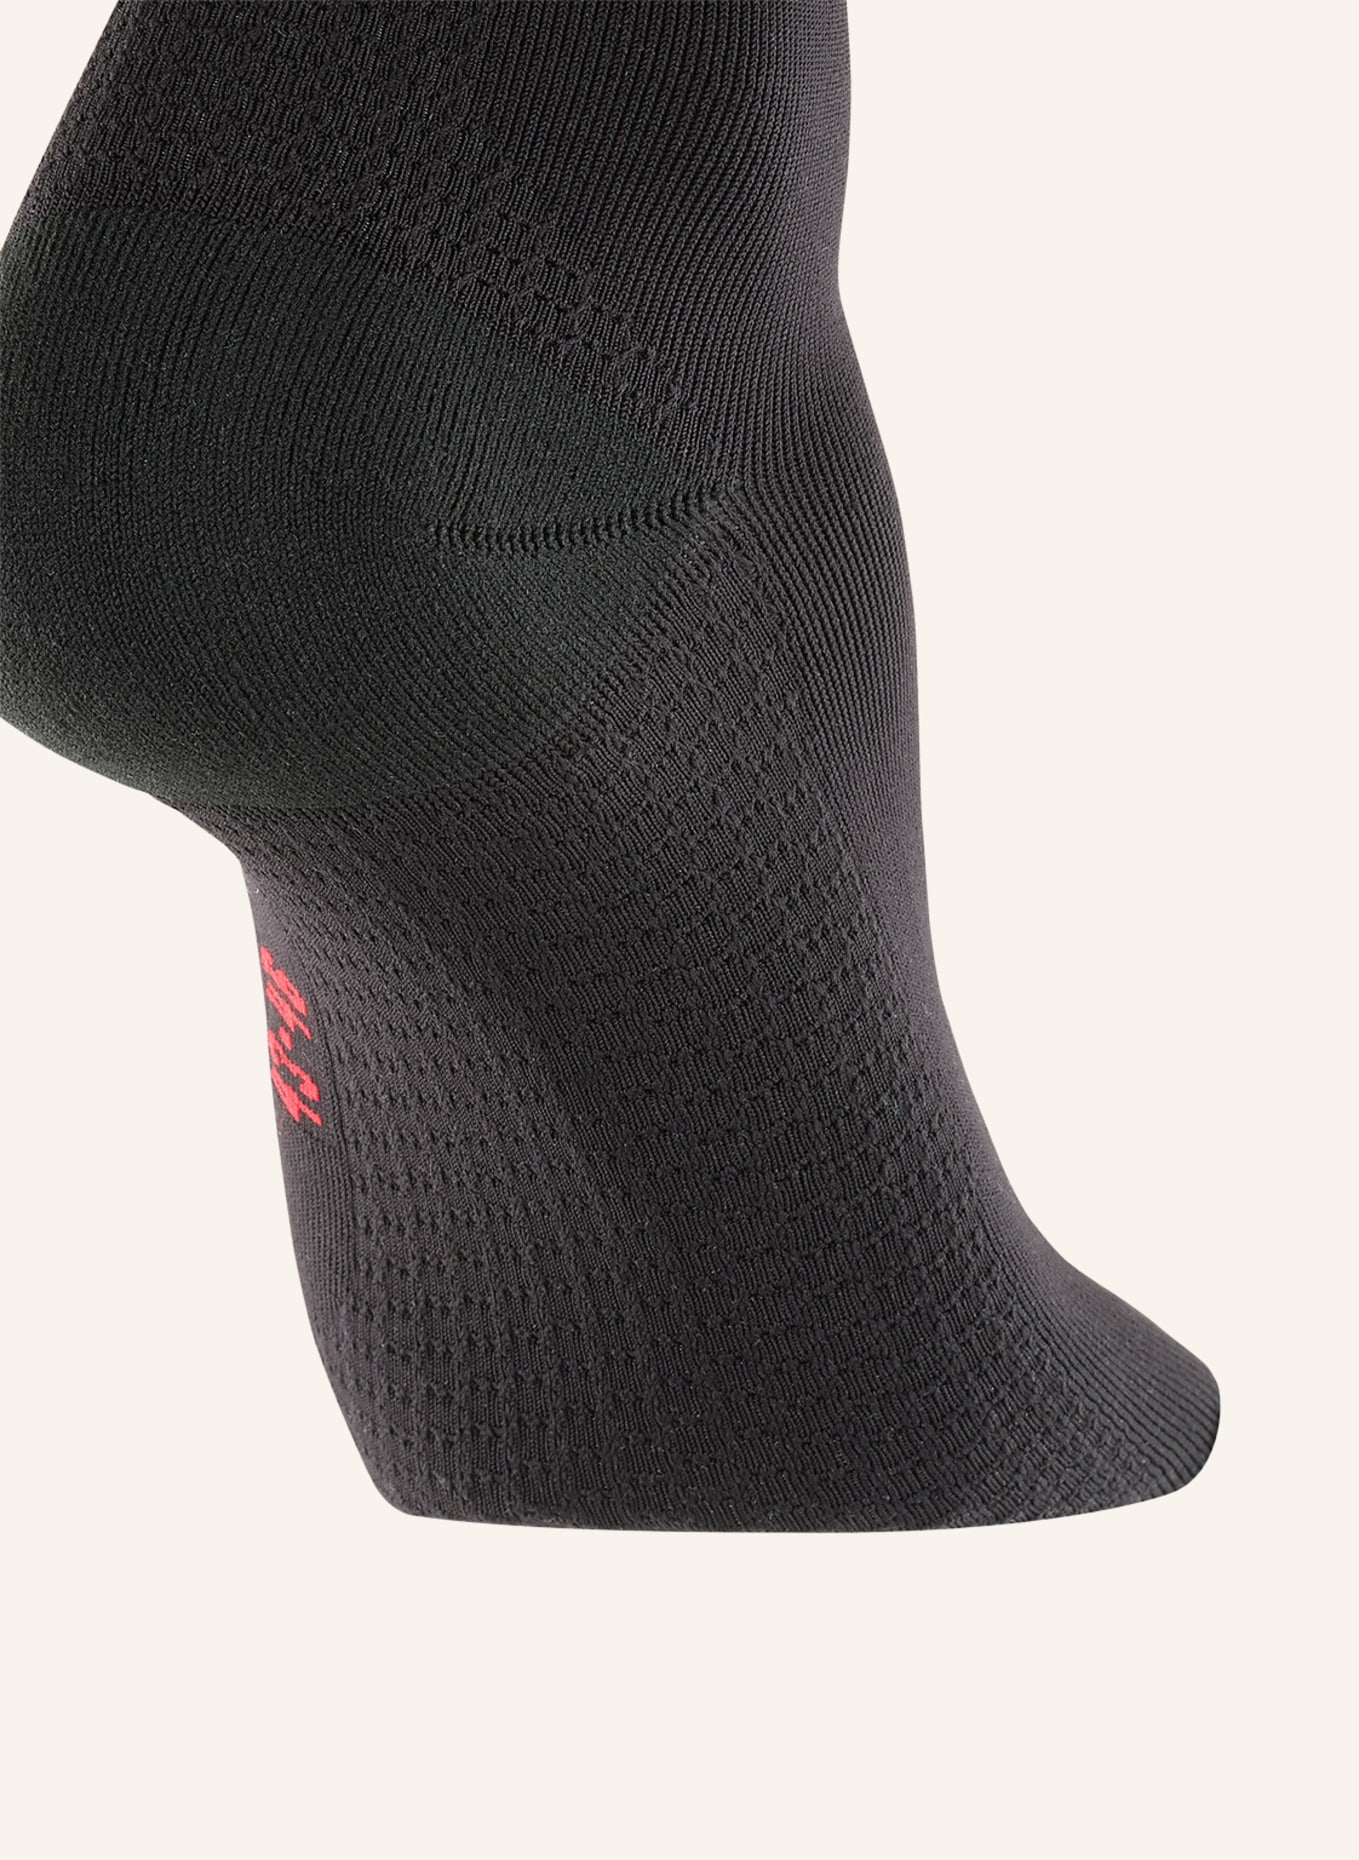 FALKE Trekking-Socken IMPULSE RUNNING, Farbe: 3008 BLACK (Bild 3)